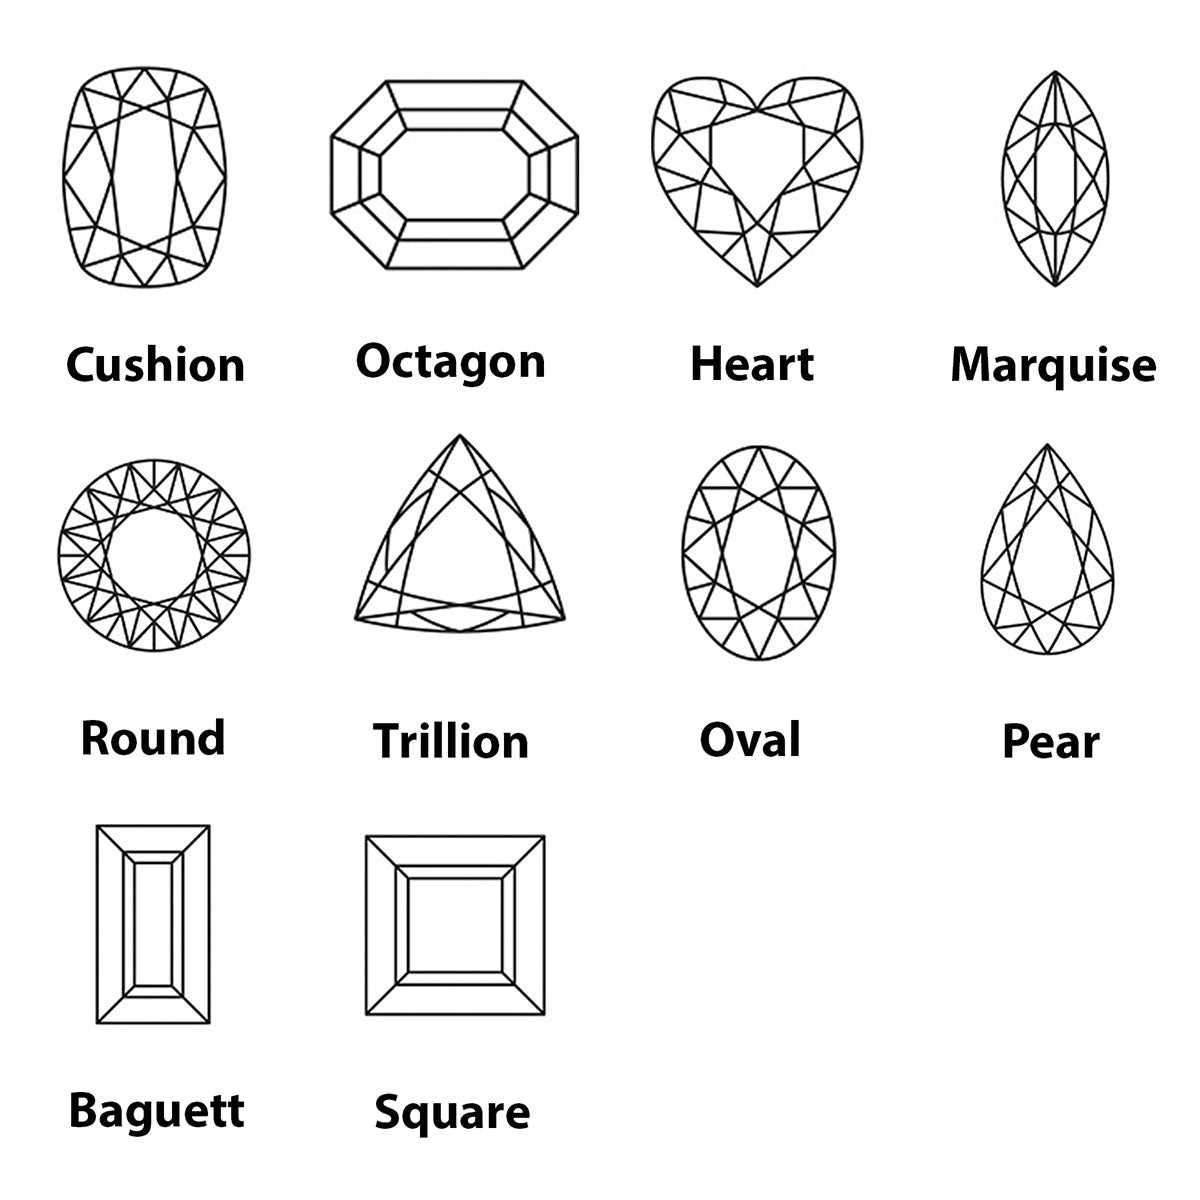 Riyogems 1 pièce émeraude verte cz à facettes 8x10mm forme octogonale pierres précieuses de qualité attrayante